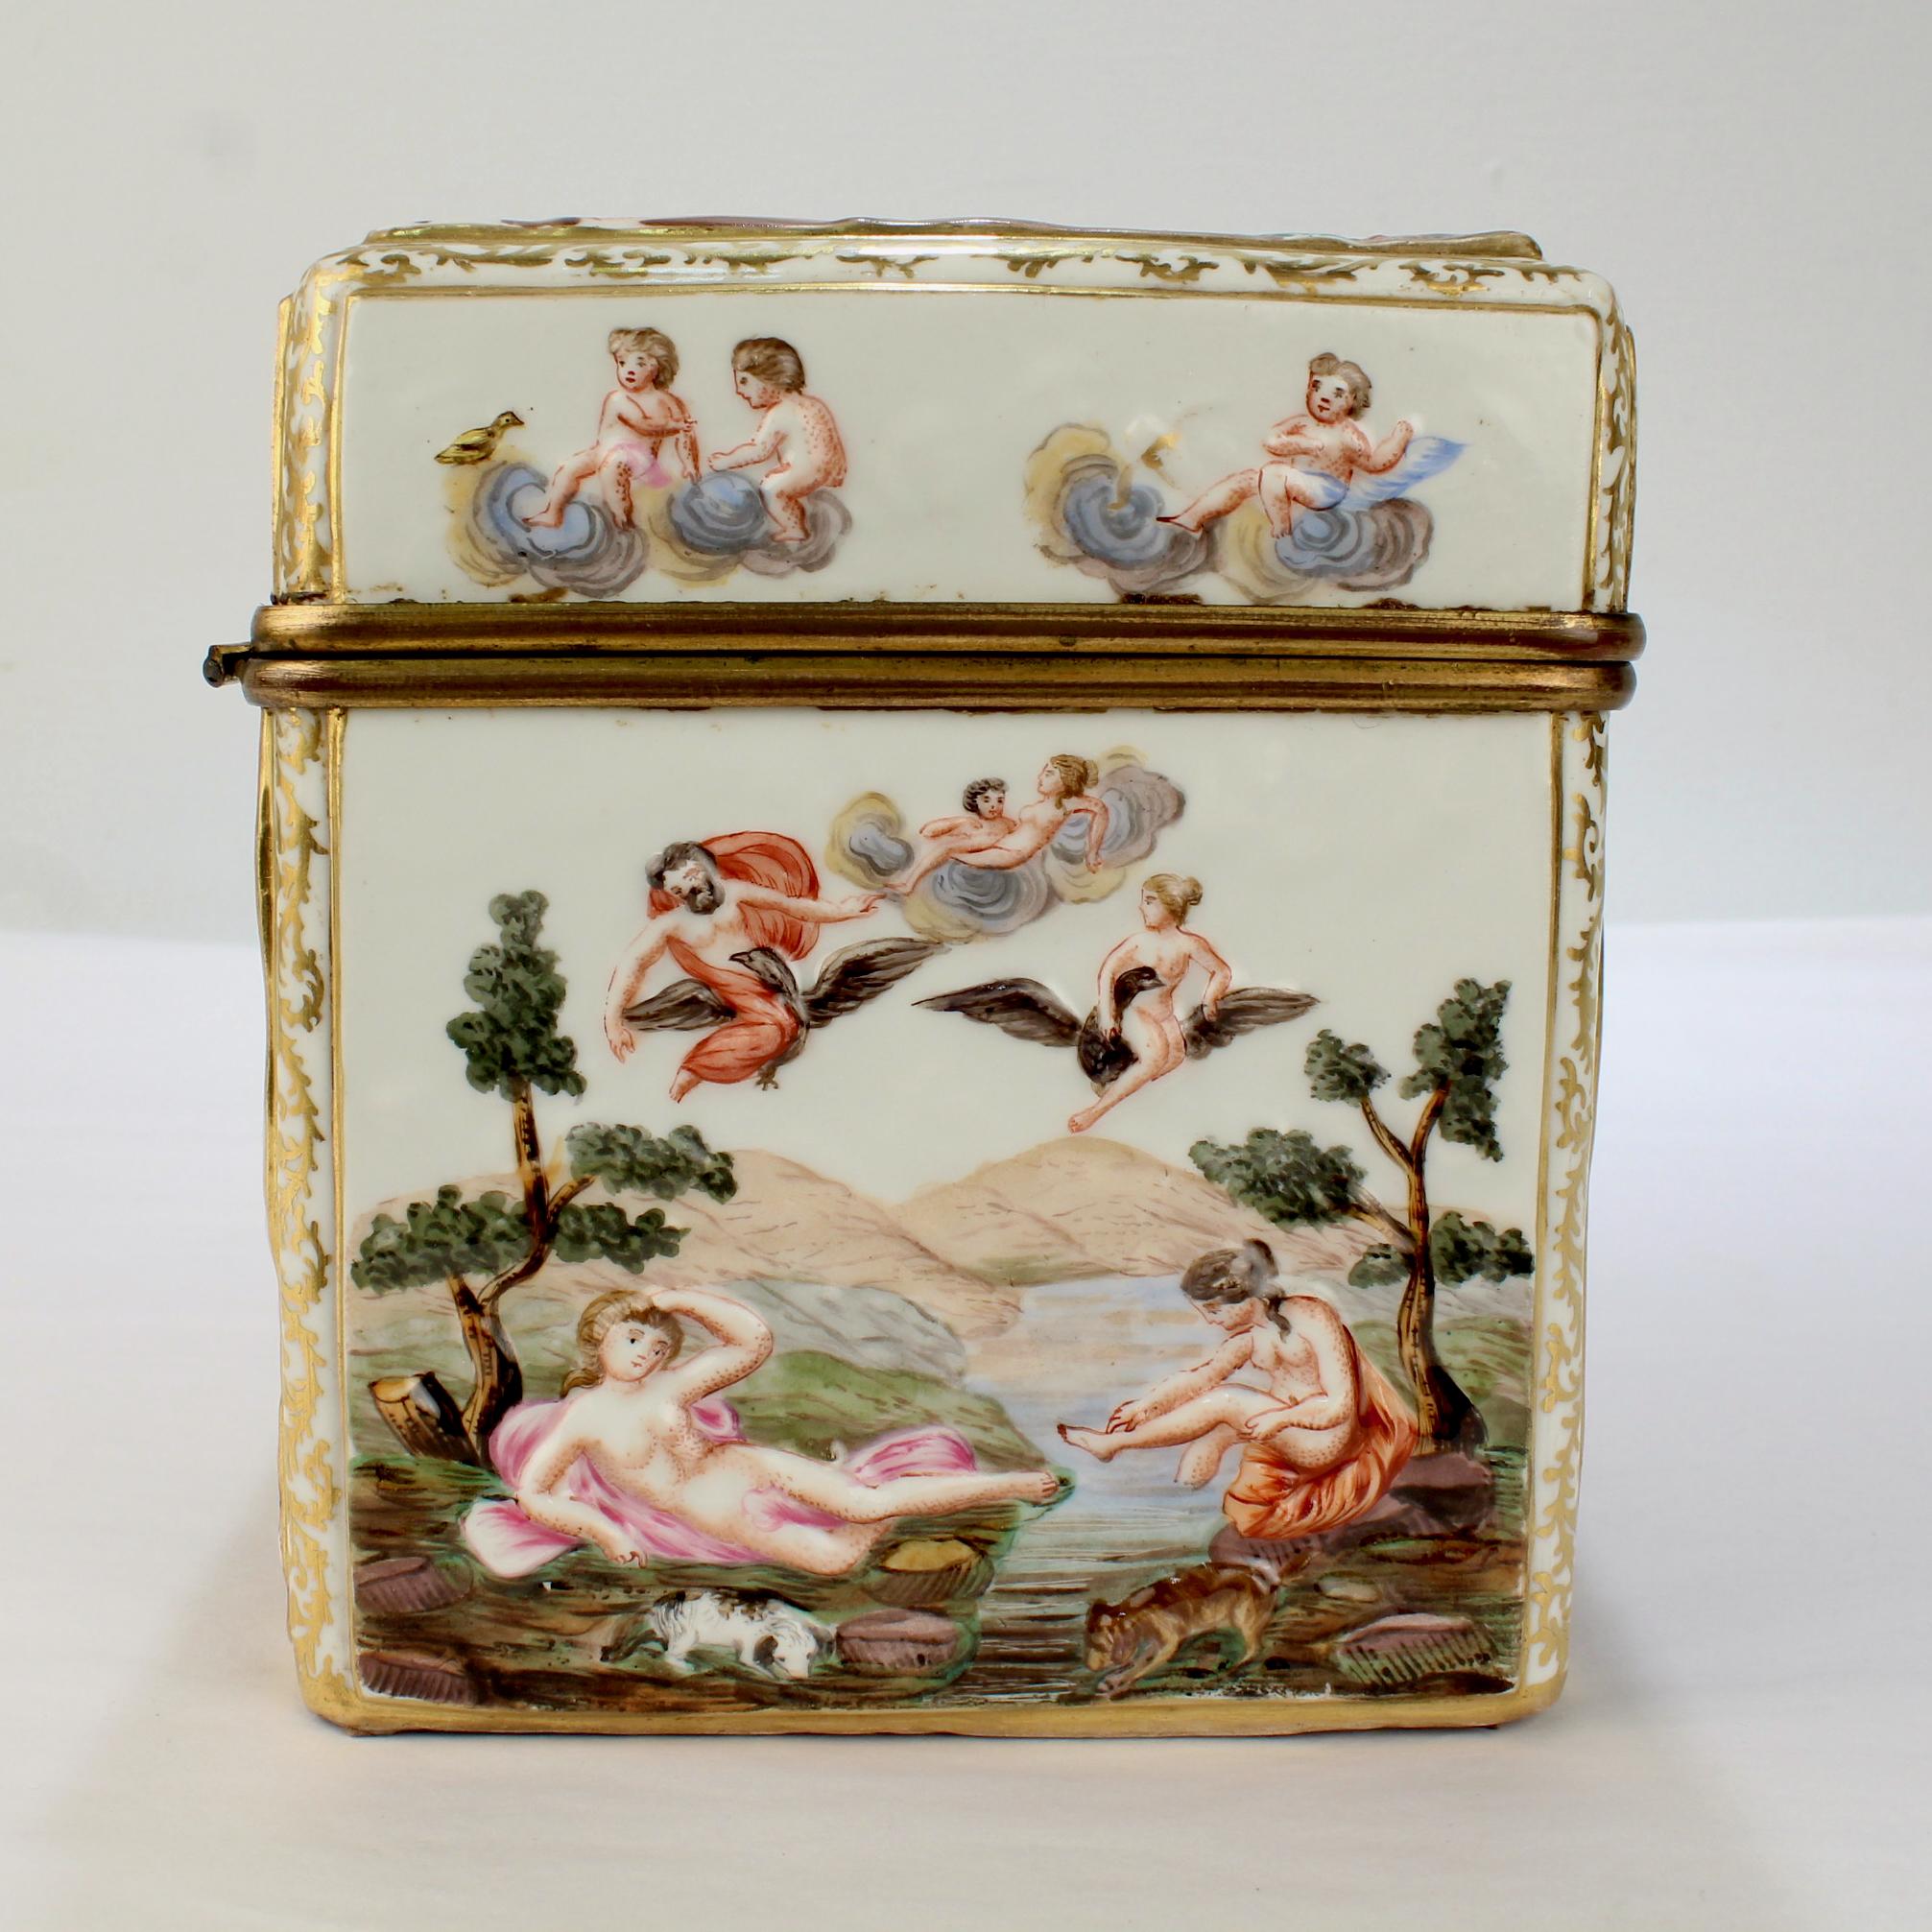 Italian Large Antique Capodimonte Porcelain Meissen Style Porcelain Casket or Table Box